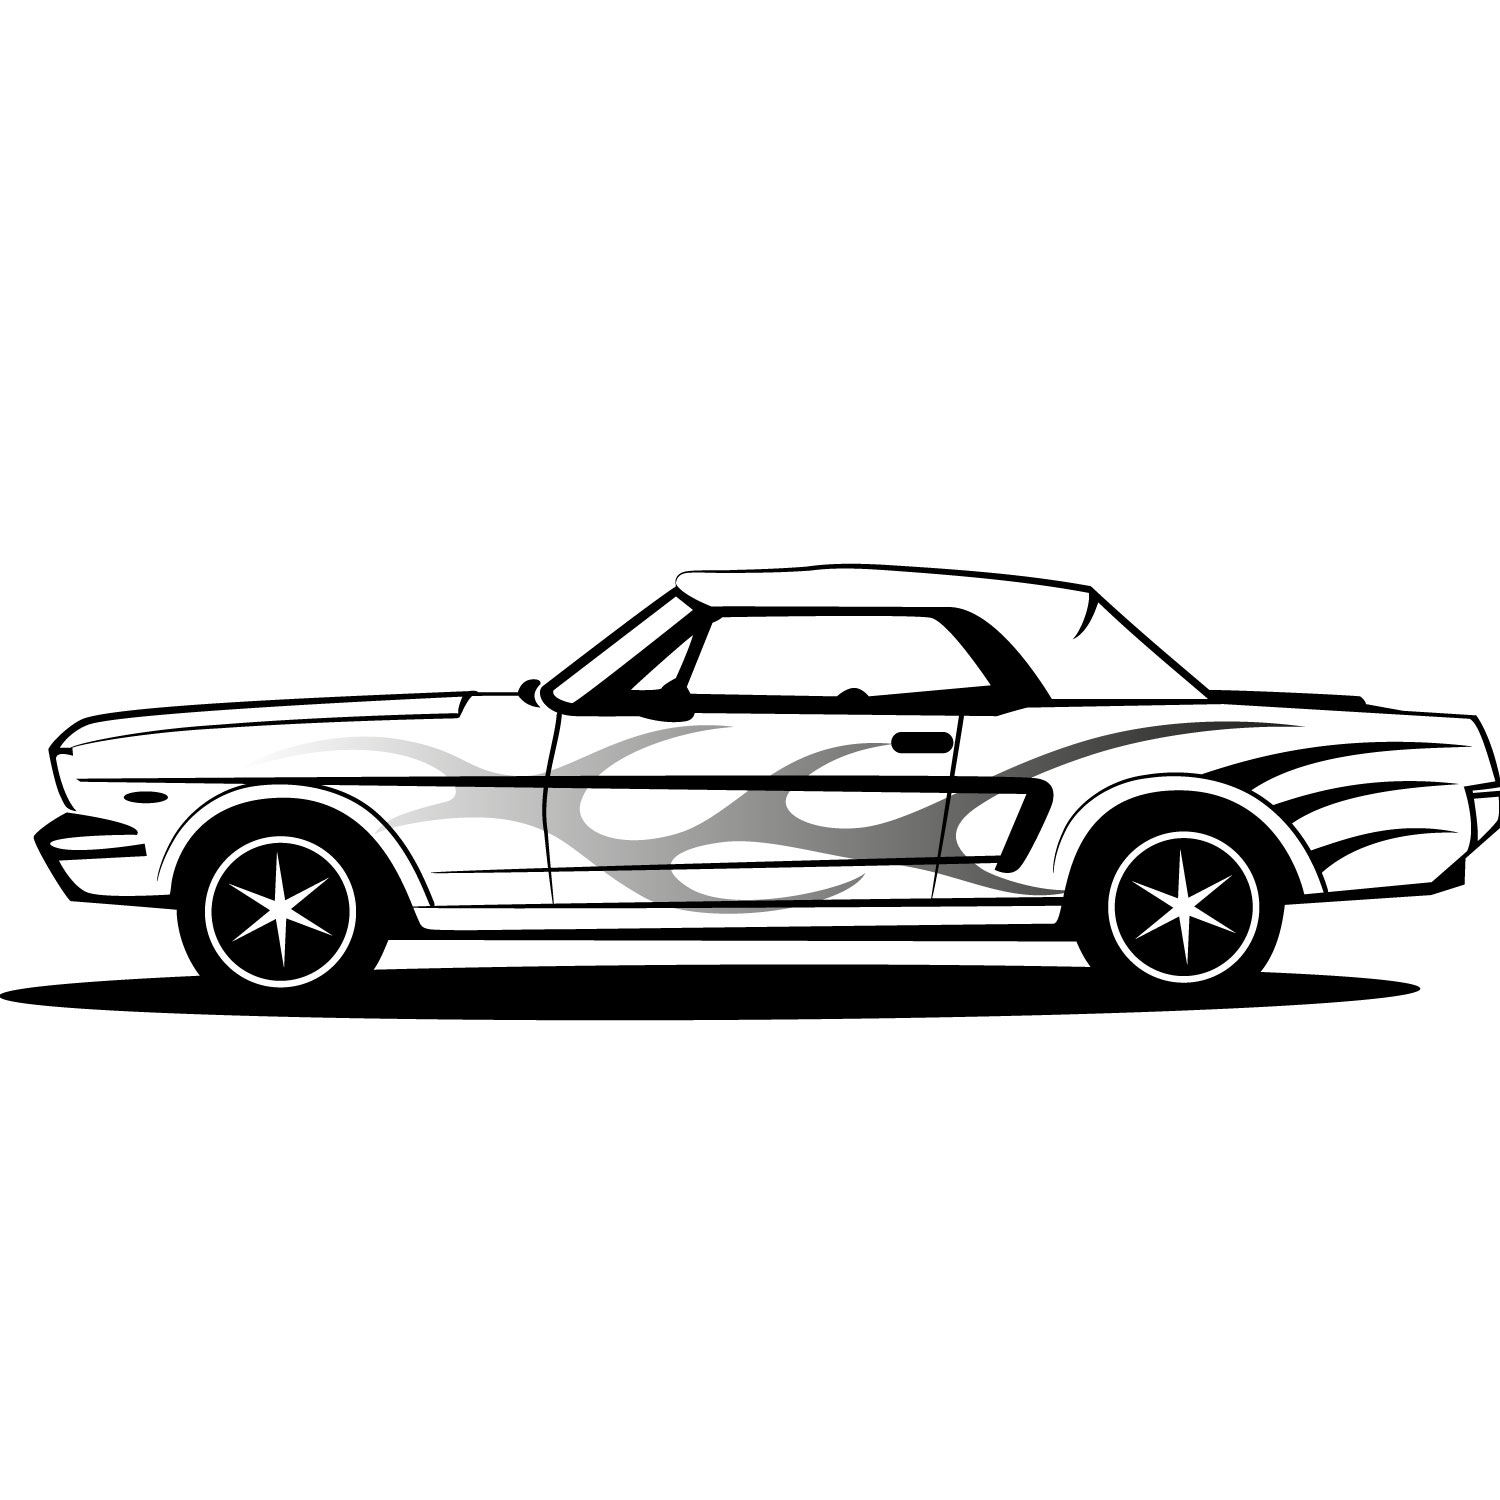 Vector Art Cars - ClipArt Best